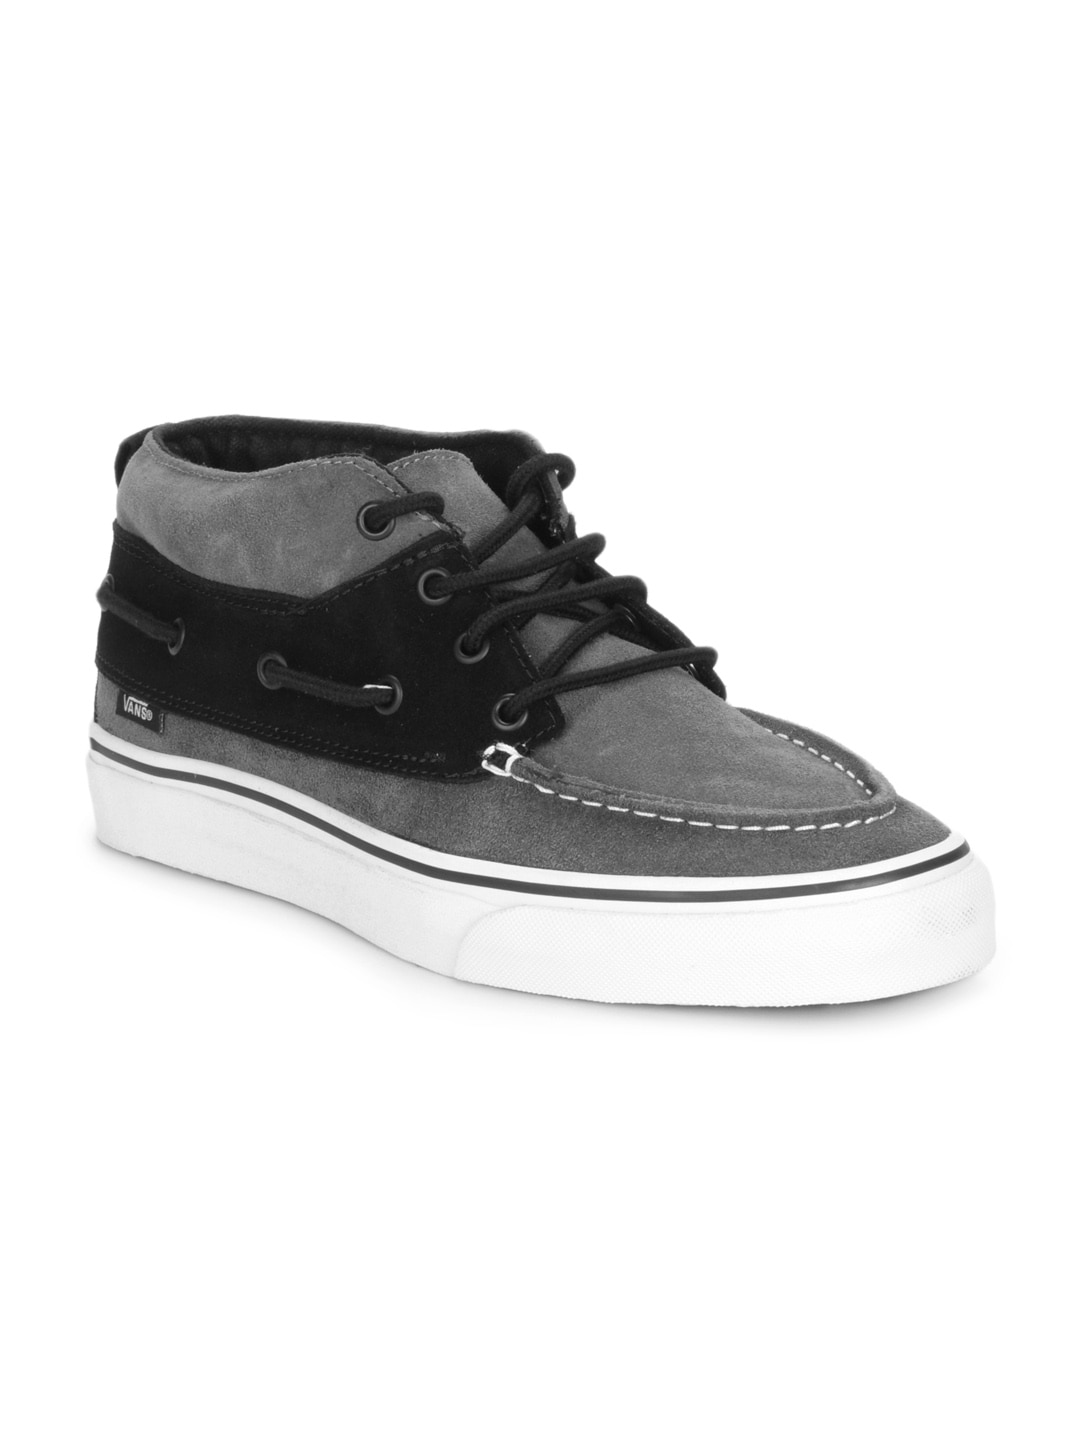 Vans Unisex Grey & Black Shoes